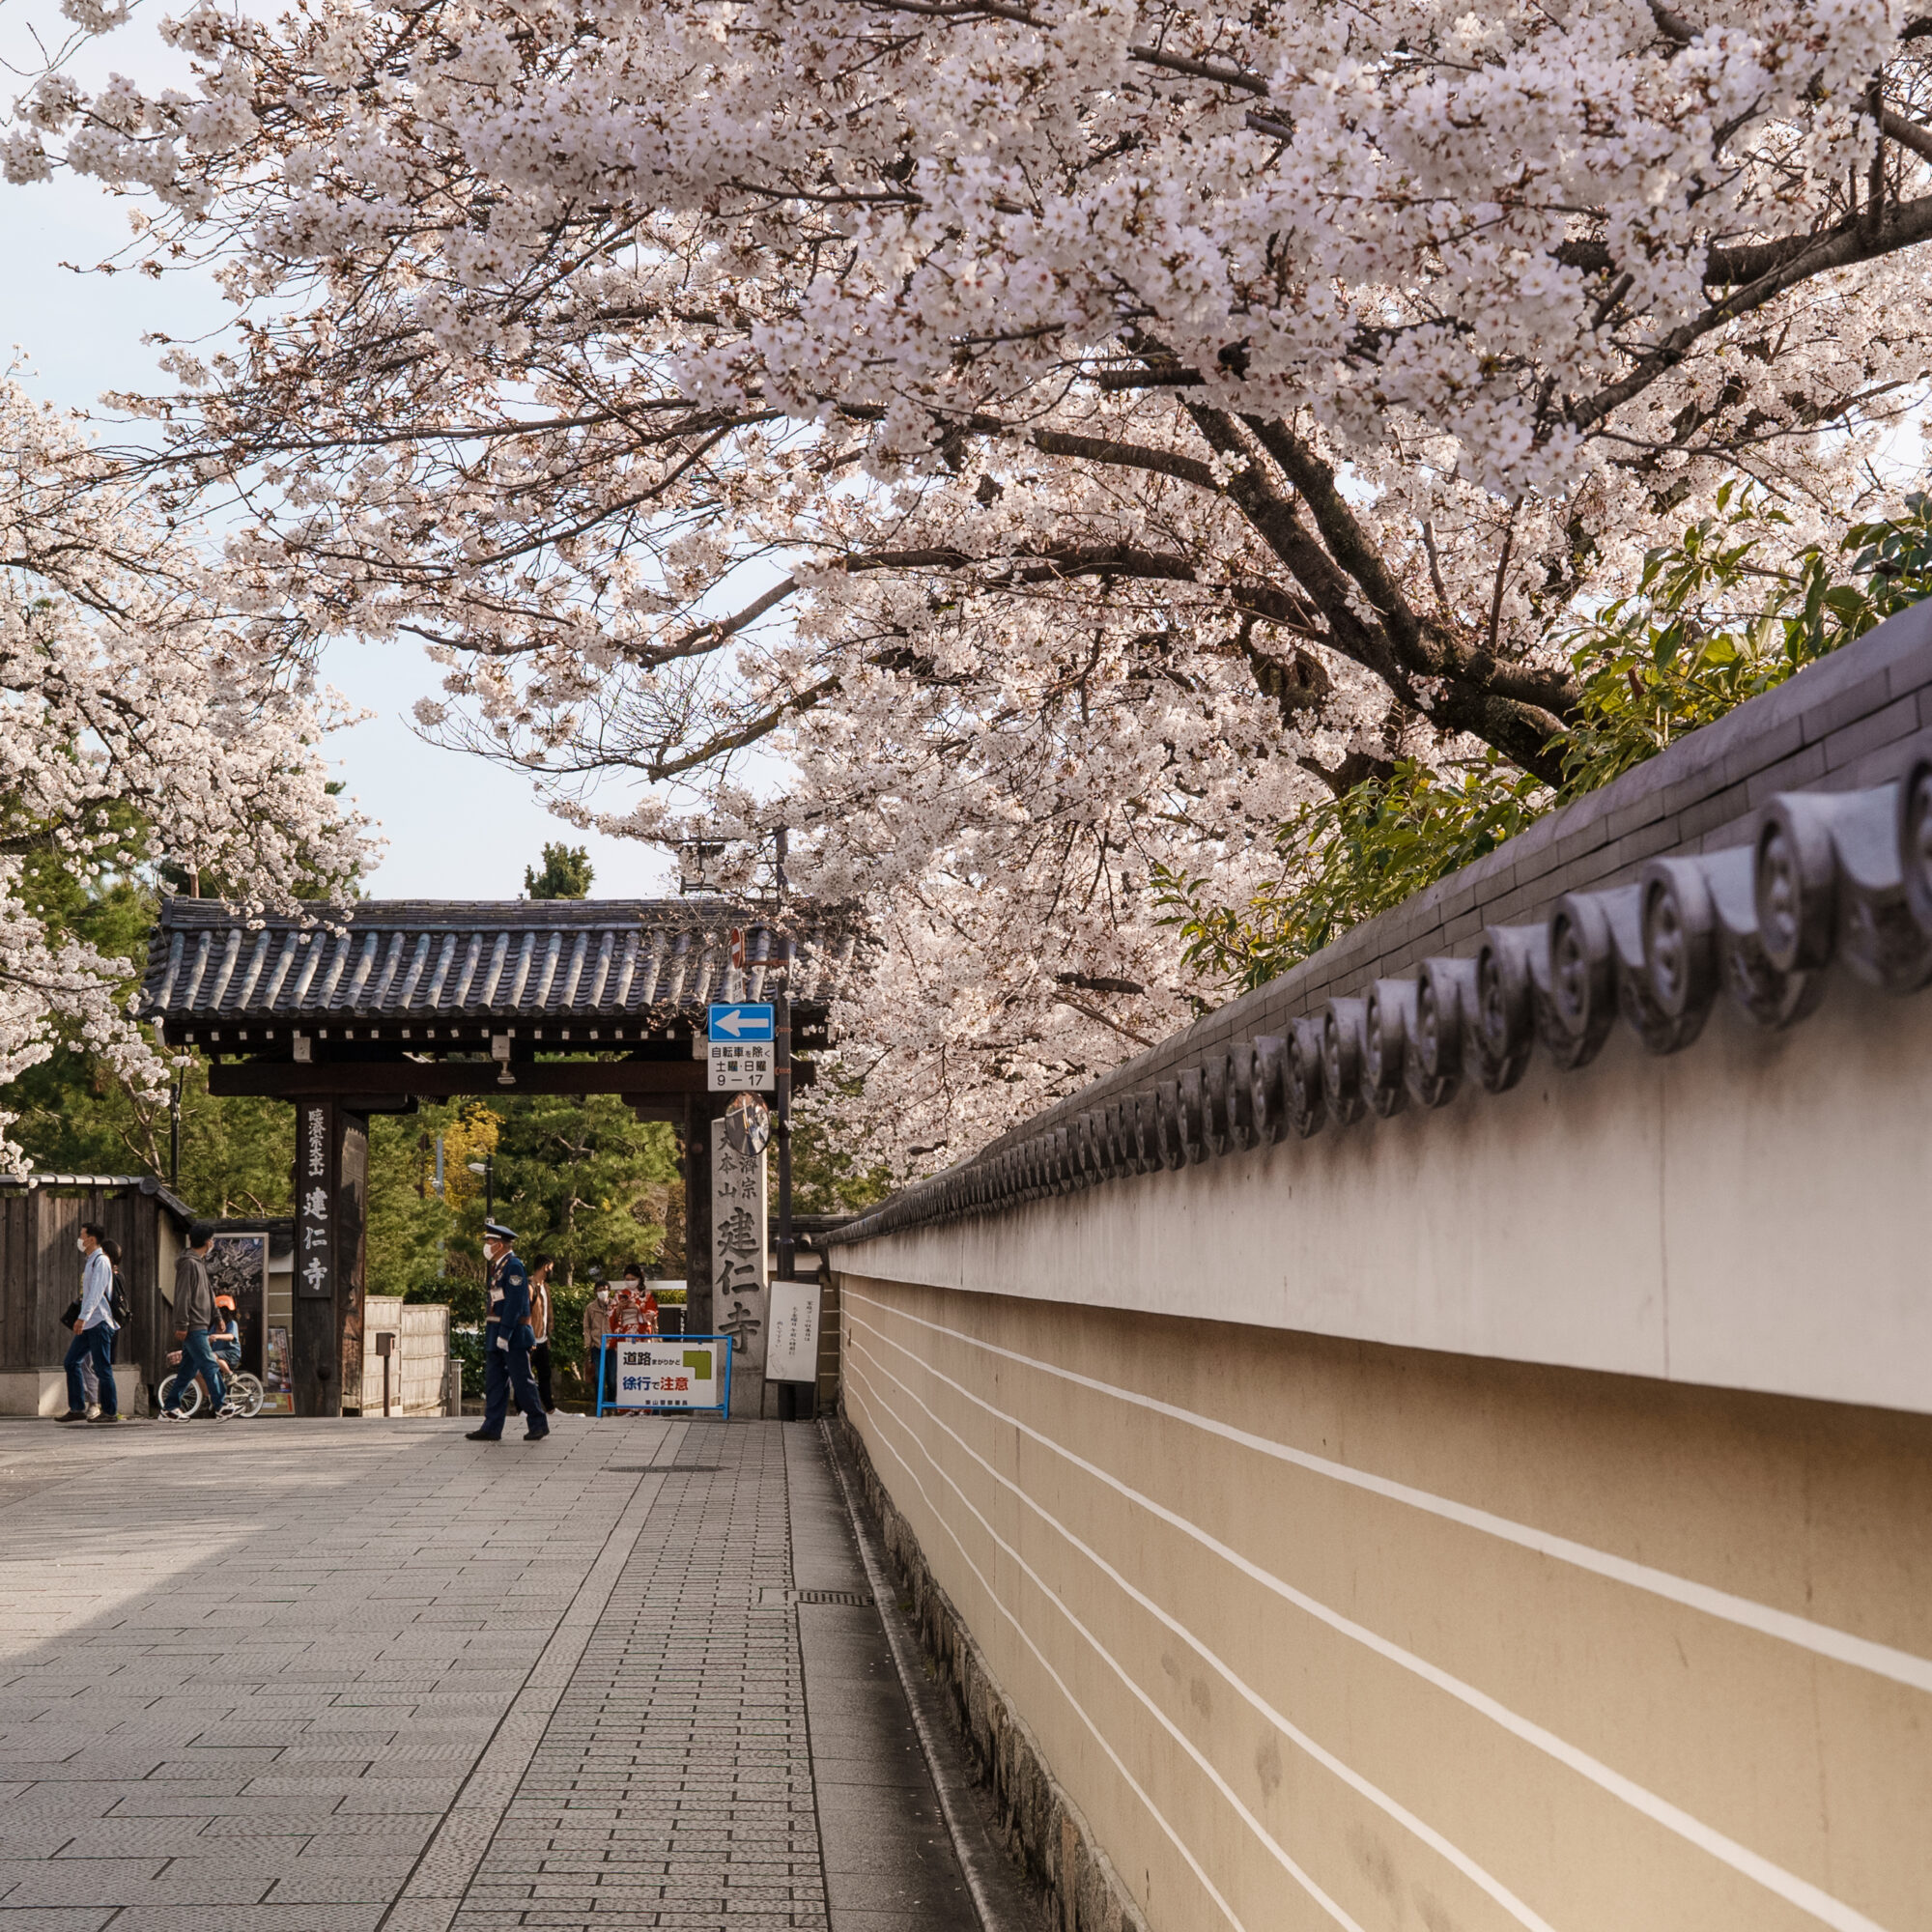 花見小路通り沿いに咲き誇る大きな桜の木。建仁寺入口付近が観光客で賑わう中、交通整理を行うガードマン 2021年3月撮影